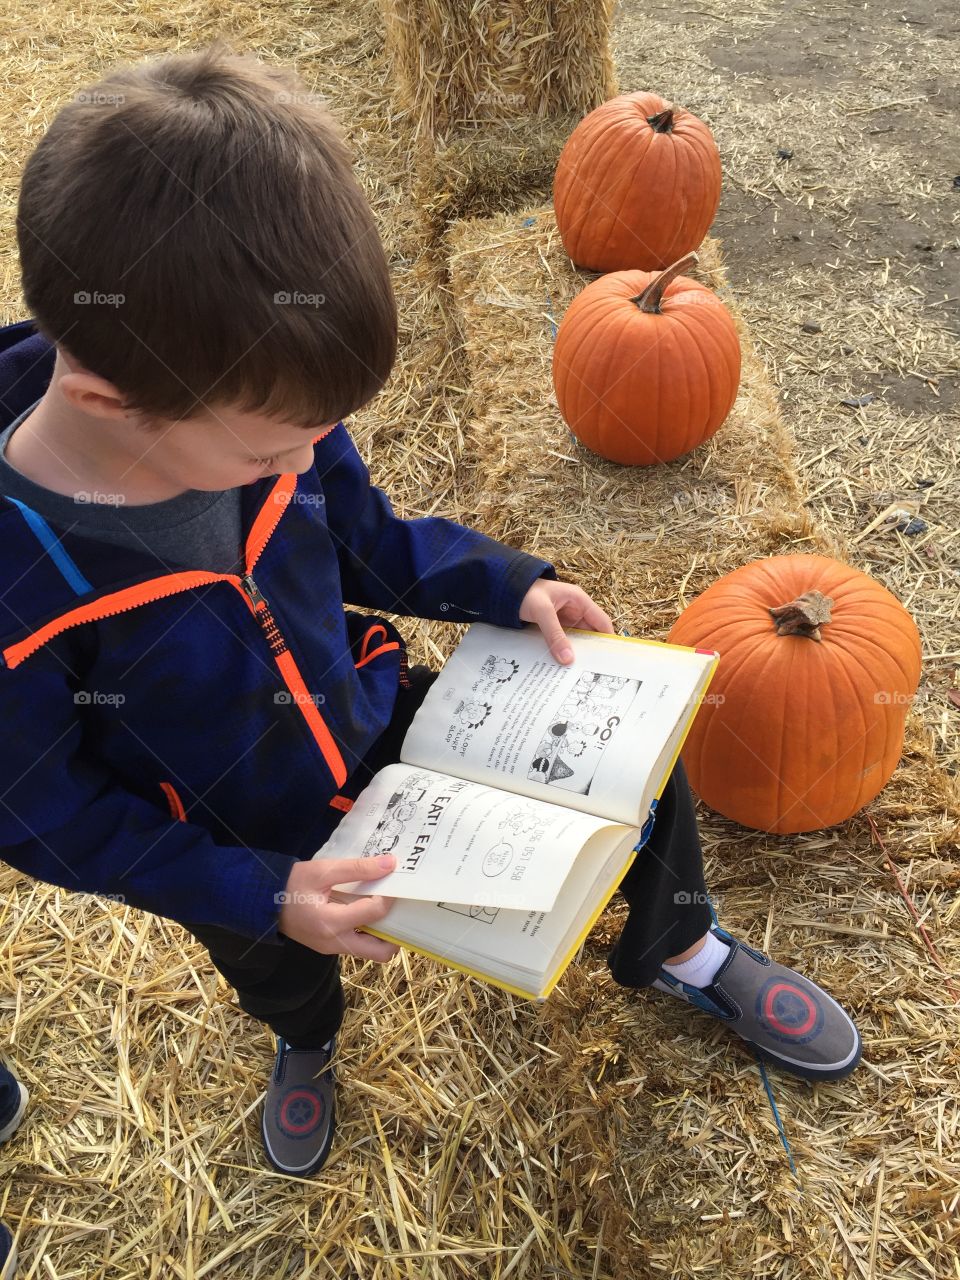 Bookworm in a pumpkin patch. 